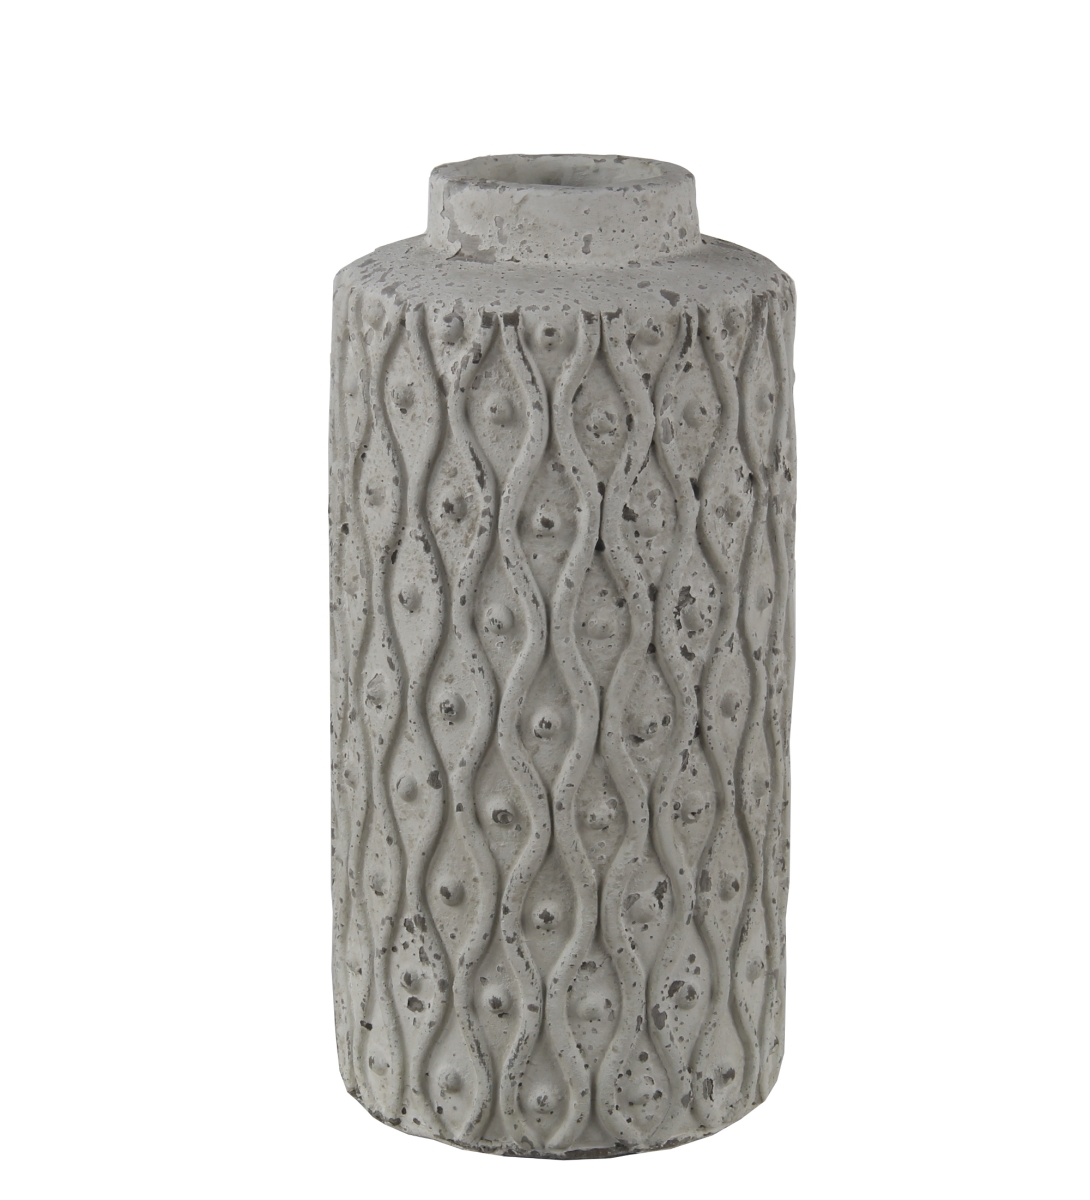 34442 5.5 X 5.5 X 12 In. Transitional Ceramic Vase, Stone